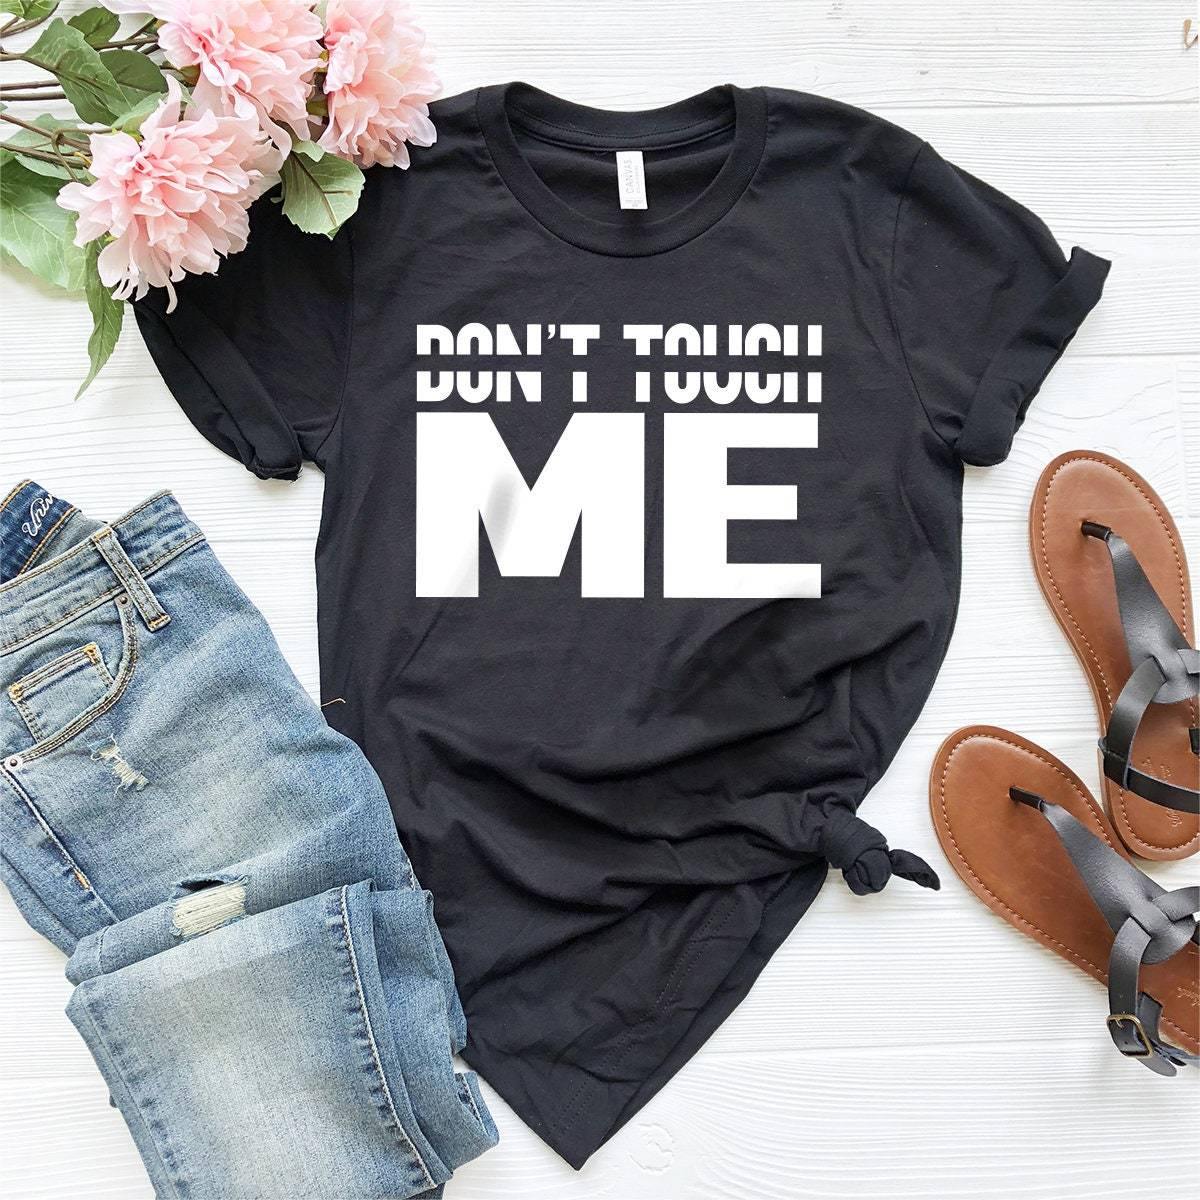 Don't Touch Me T Shirt, Unsocials  Shirt, Unsocials  T Shirt, Unsocials  Tee, Introvert T Shirt, Don't Touch Shirt - Fastdeliverytees.com